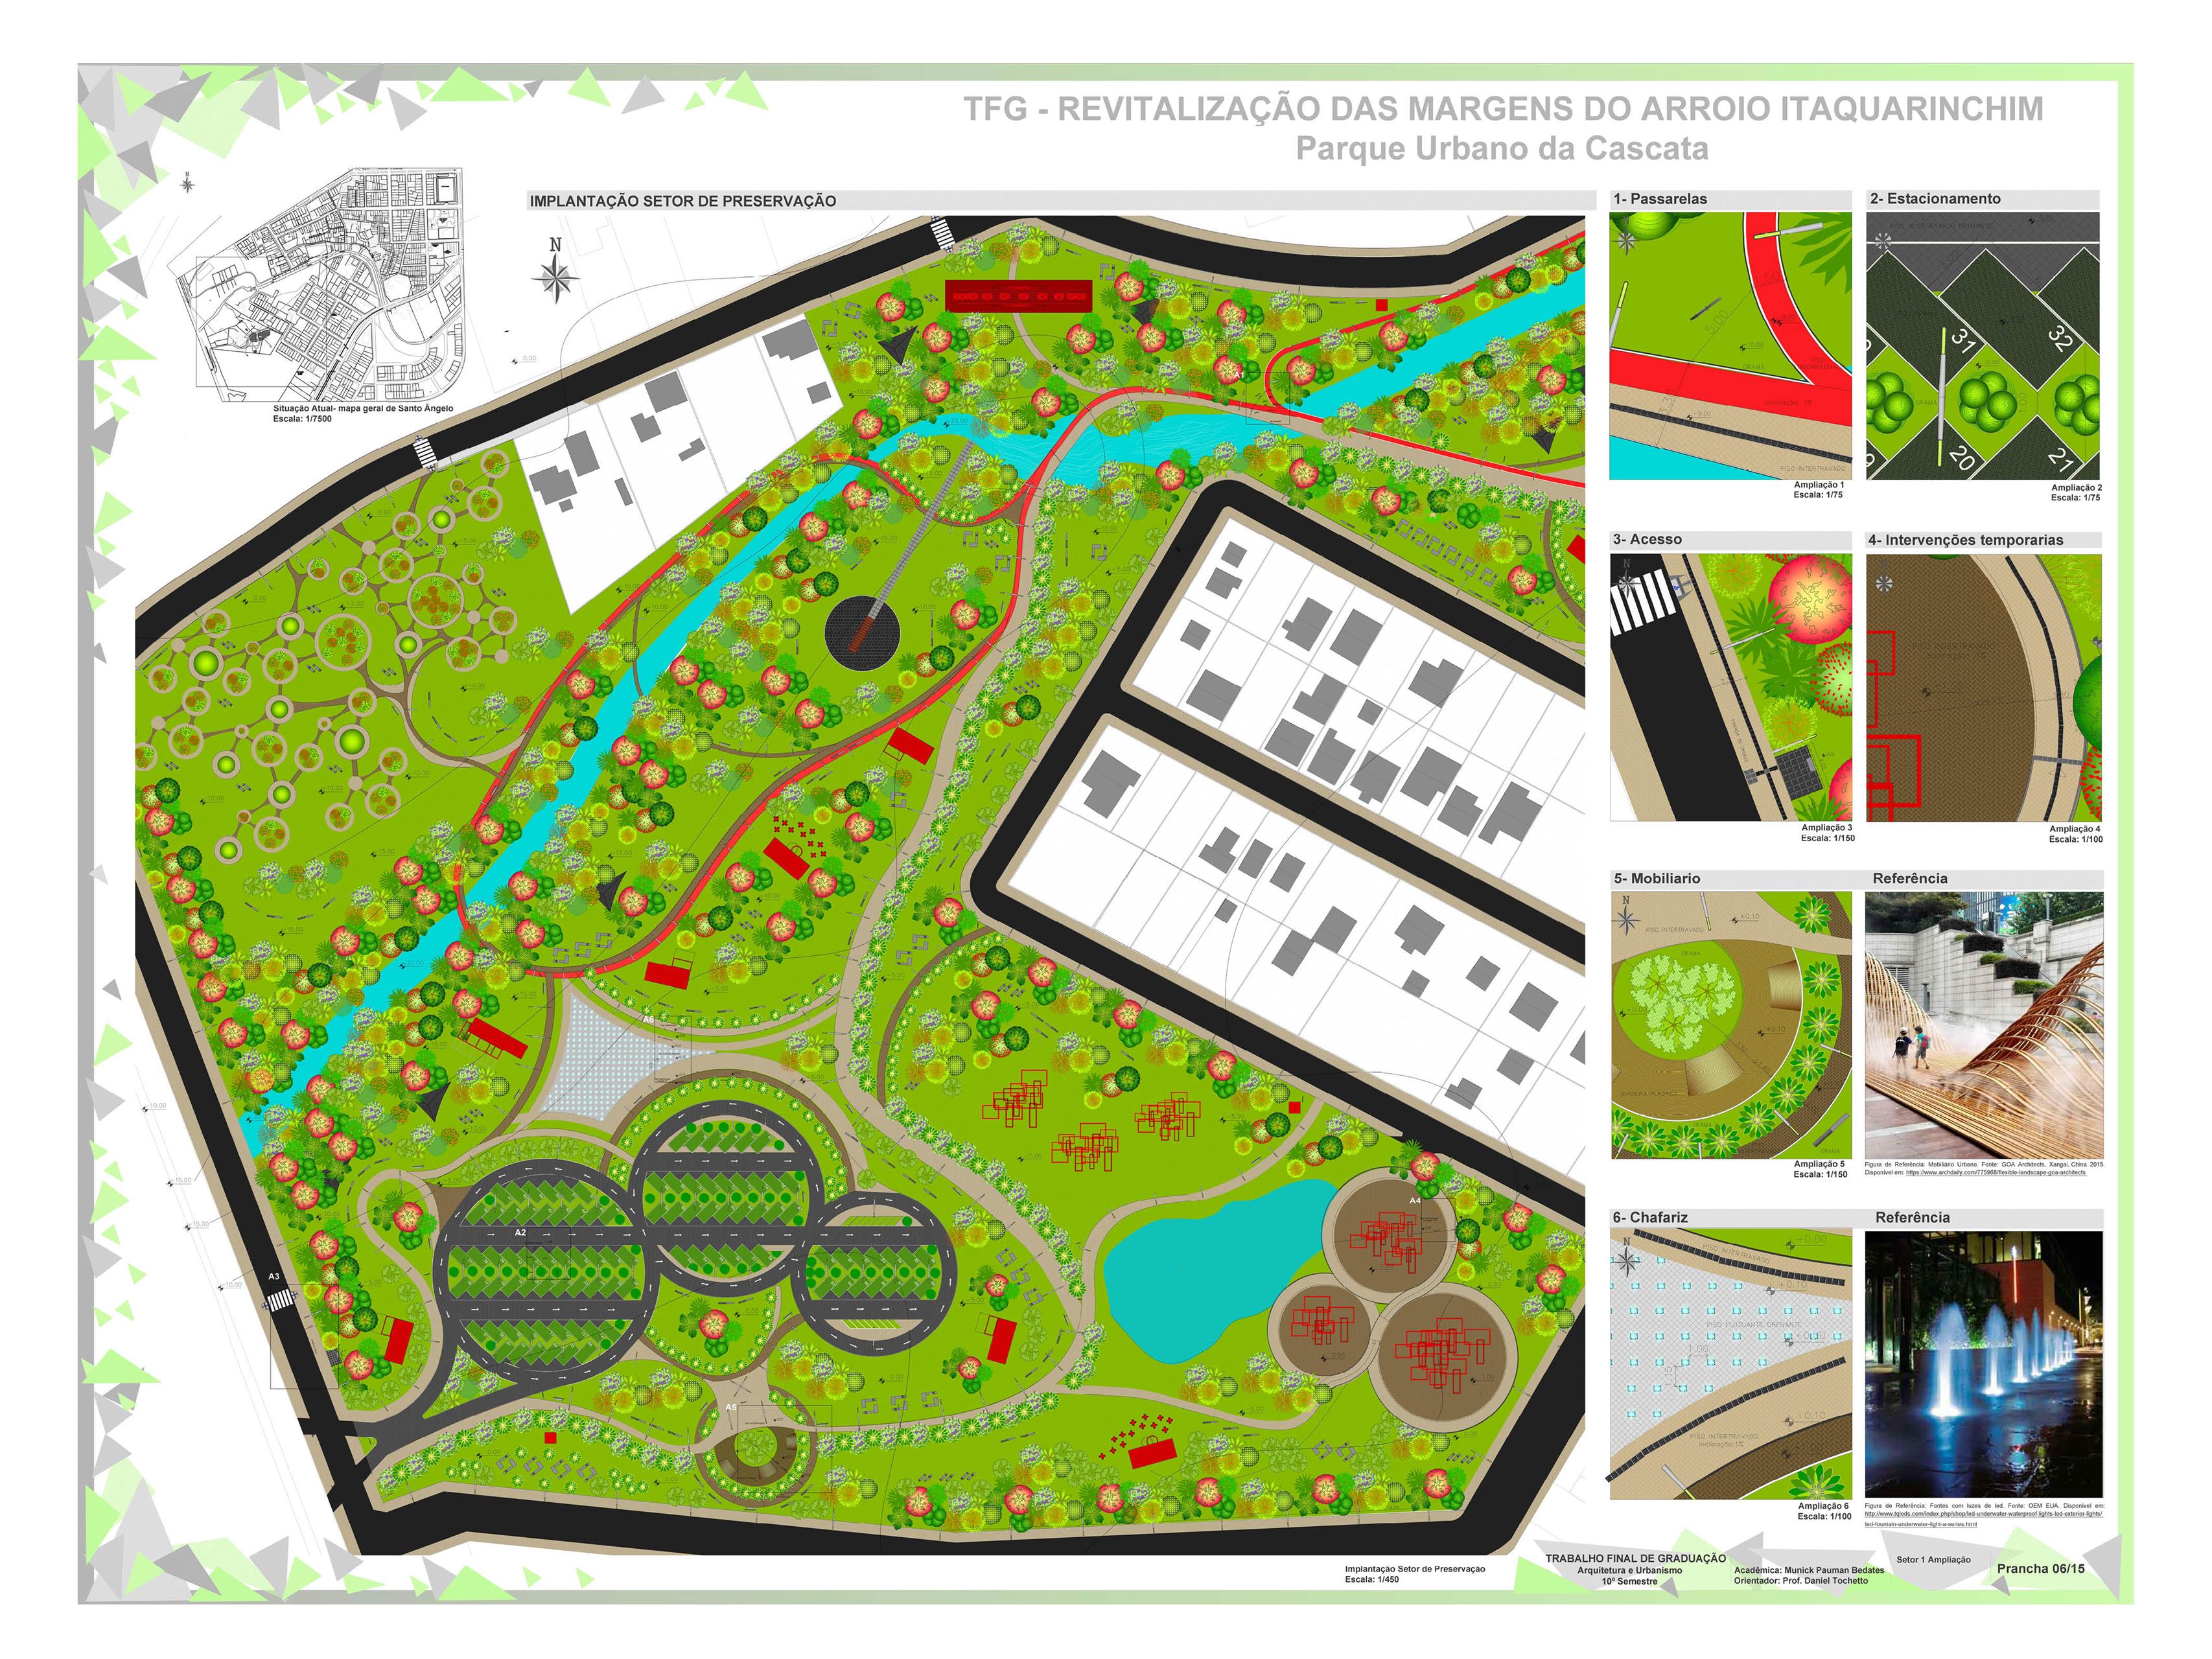 Revitalização das Margens do Arroio Itaquarinchim - Parque Urbano da Cascata6 (Copy)